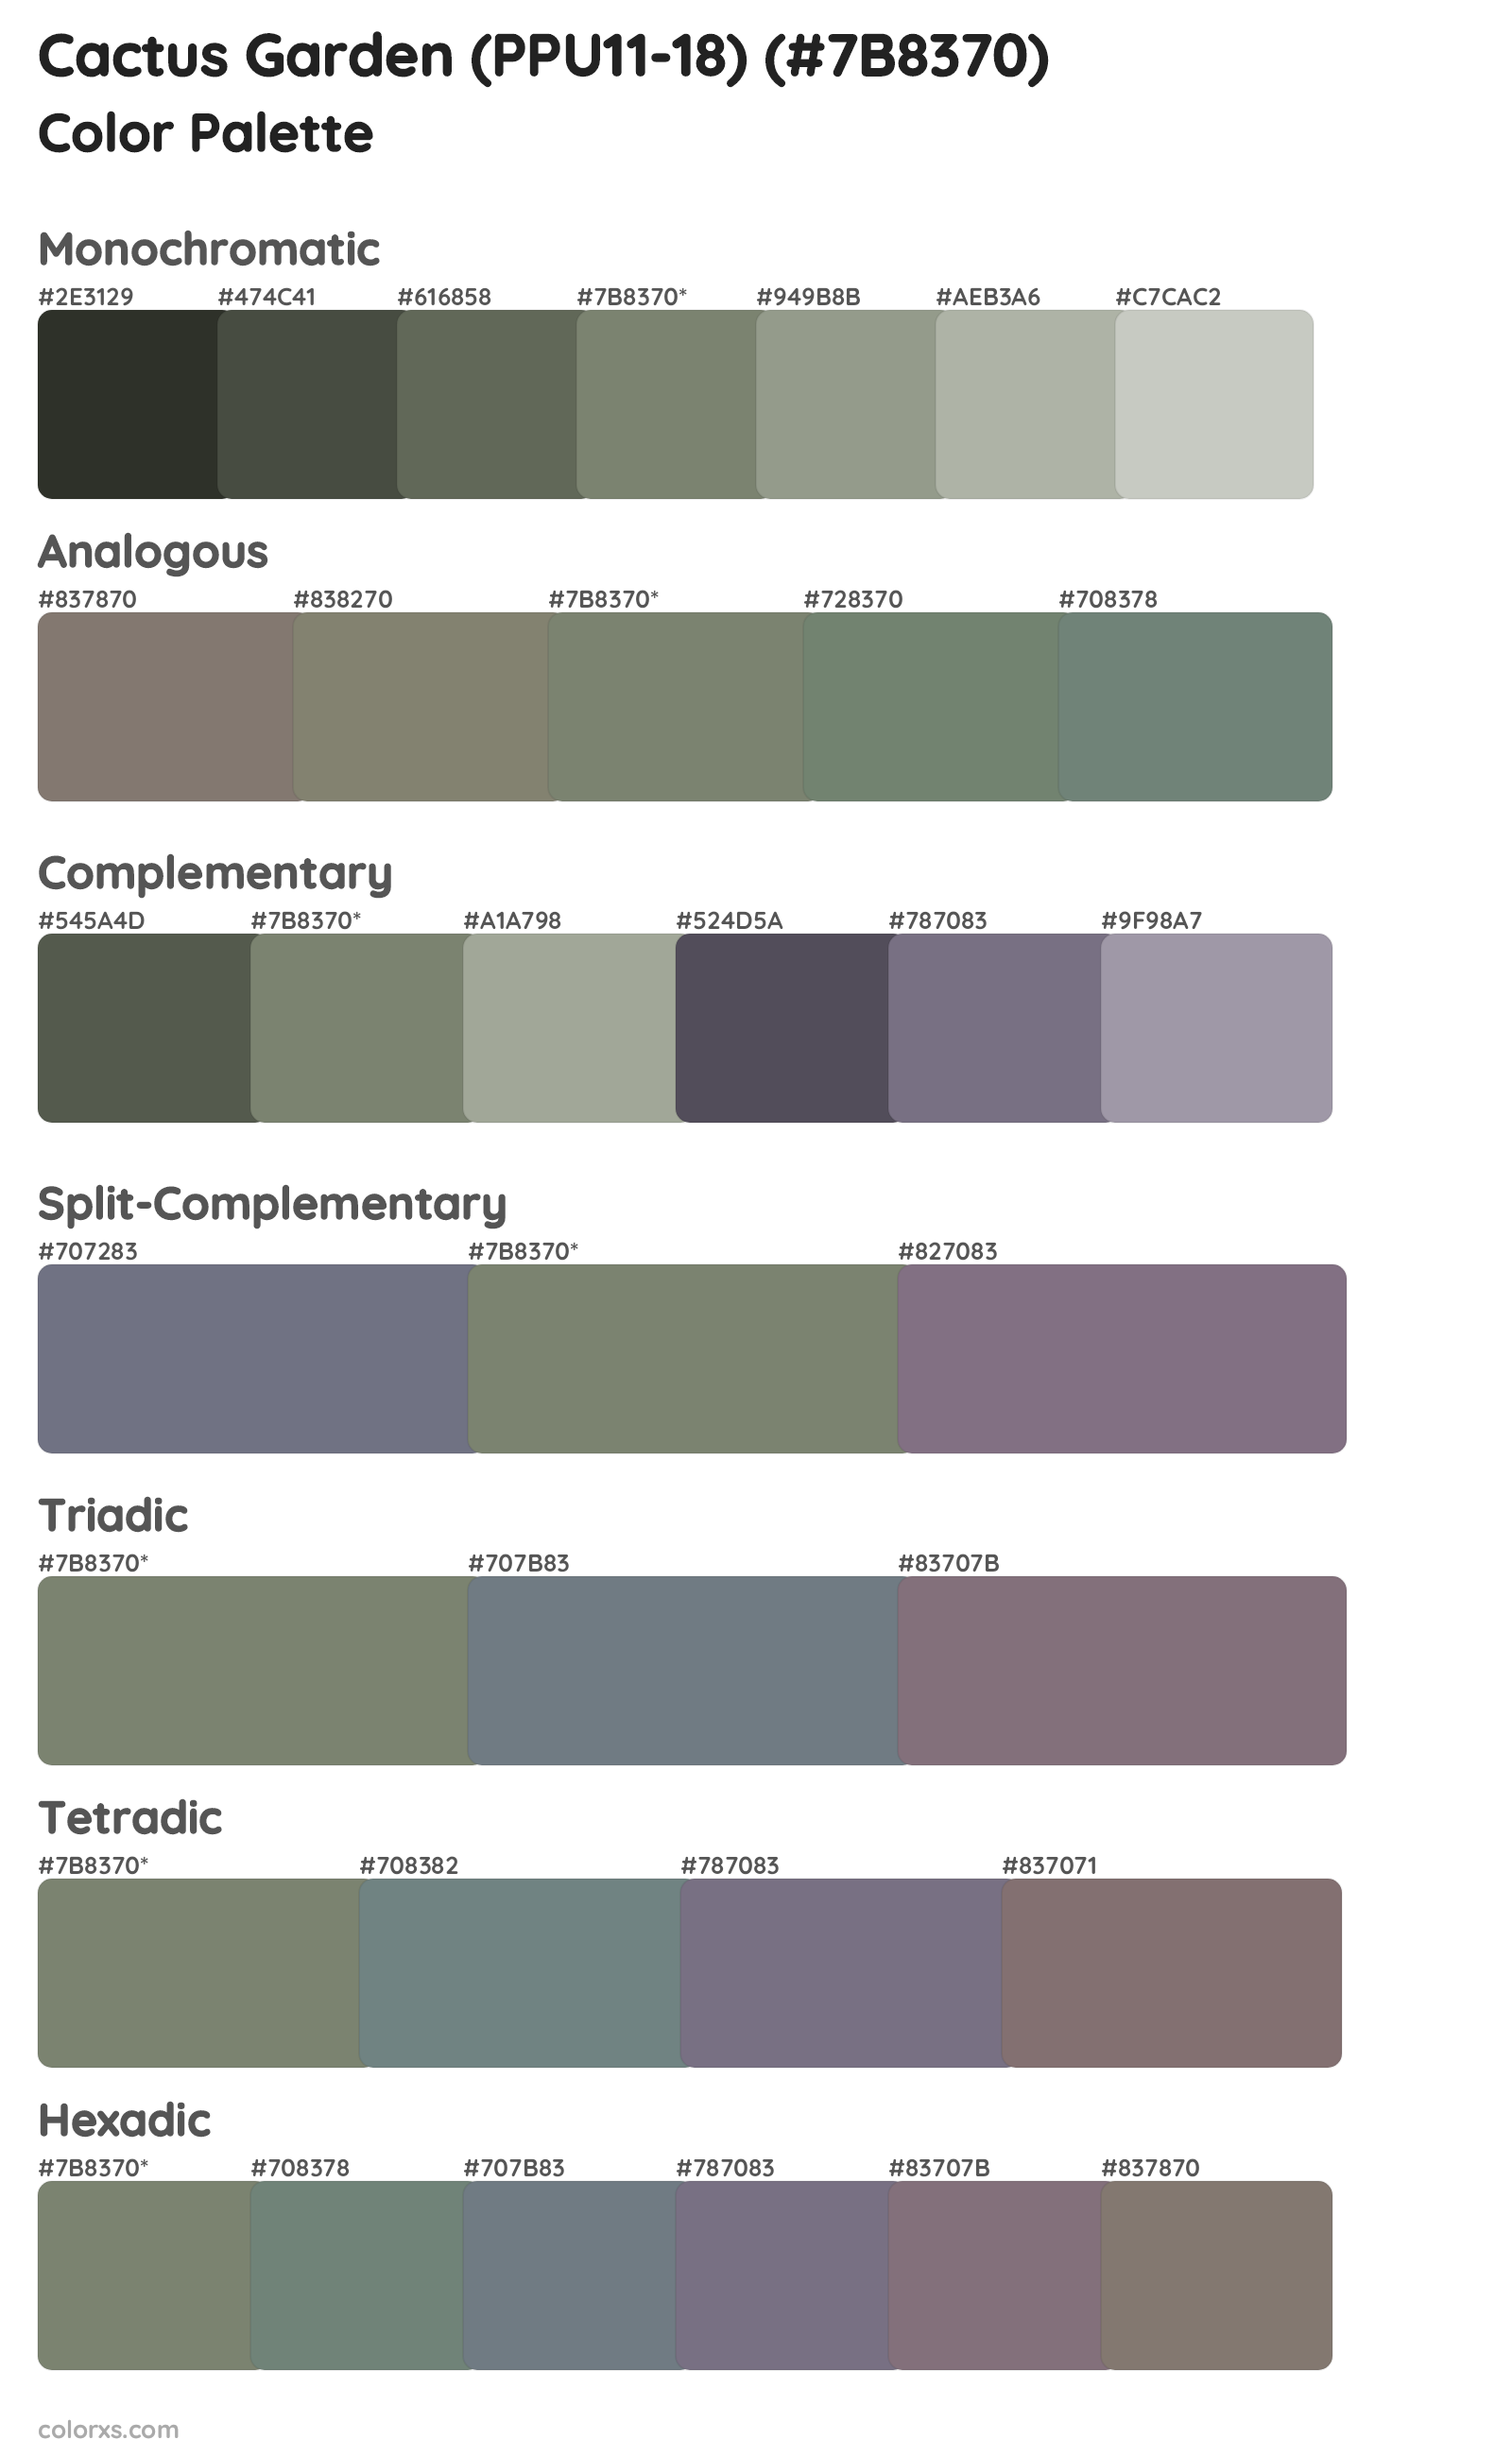 Cactus Garden (PPU11-18) Color Scheme Palettes